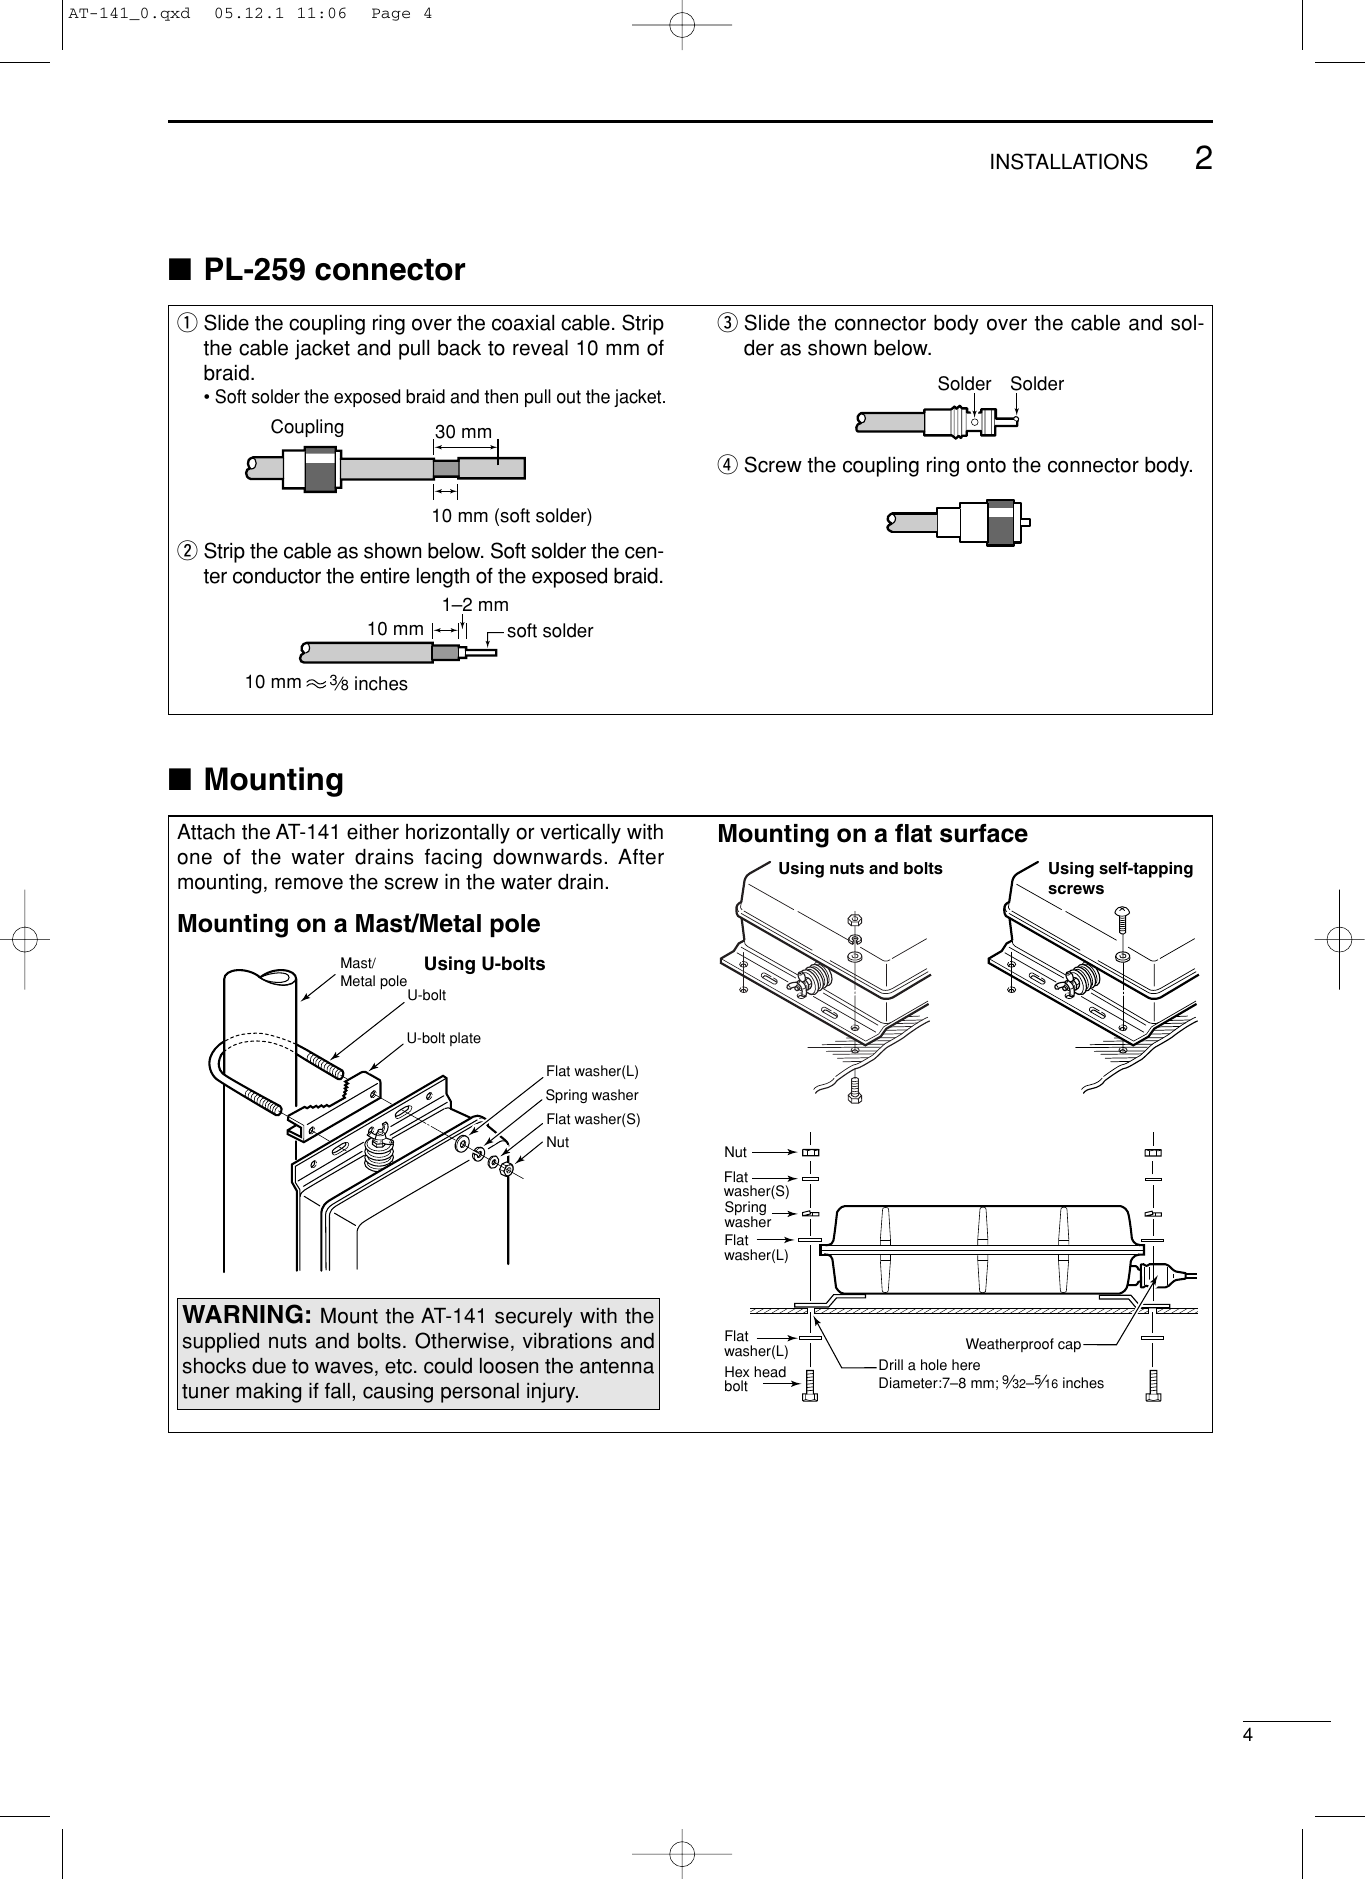 Page 7 of 11 - Icom Icom-At-141-Users-Manual- AT-141 Instruction Manual  Icom-at-141-users-manual